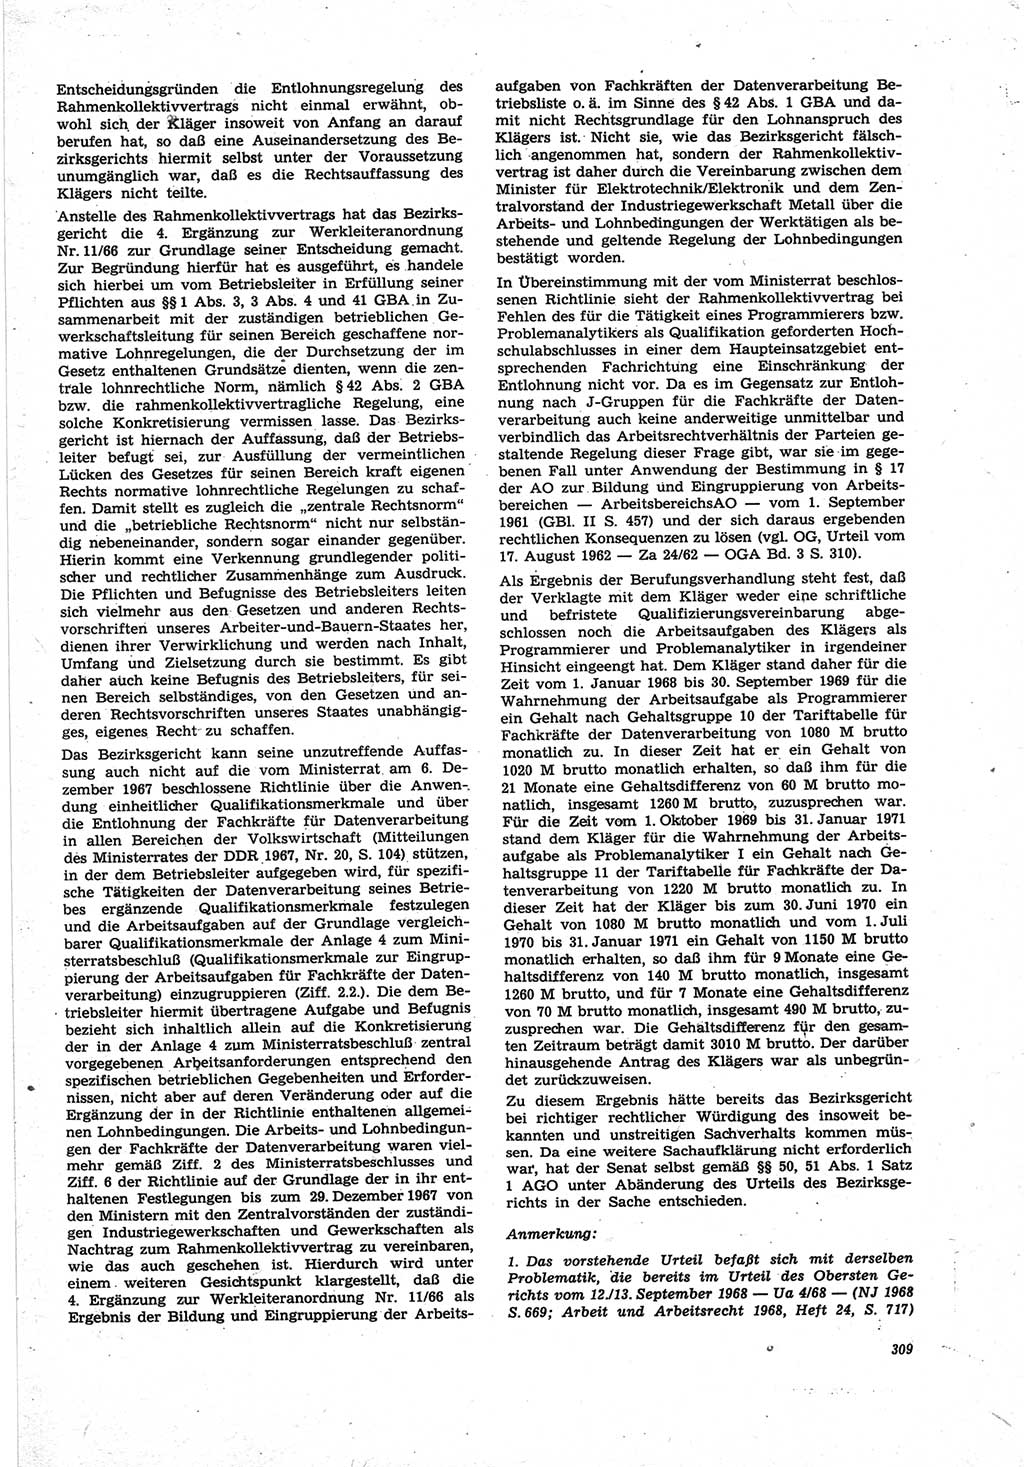 Neue Justiz (NJ), Zeitschrift für Recht und Rechtswissenschaft [Deutsche Demokratische Republik (DDR)], 25. Jahrgang 1971, Seite 309 (NJ DDR 1971, S. 309)